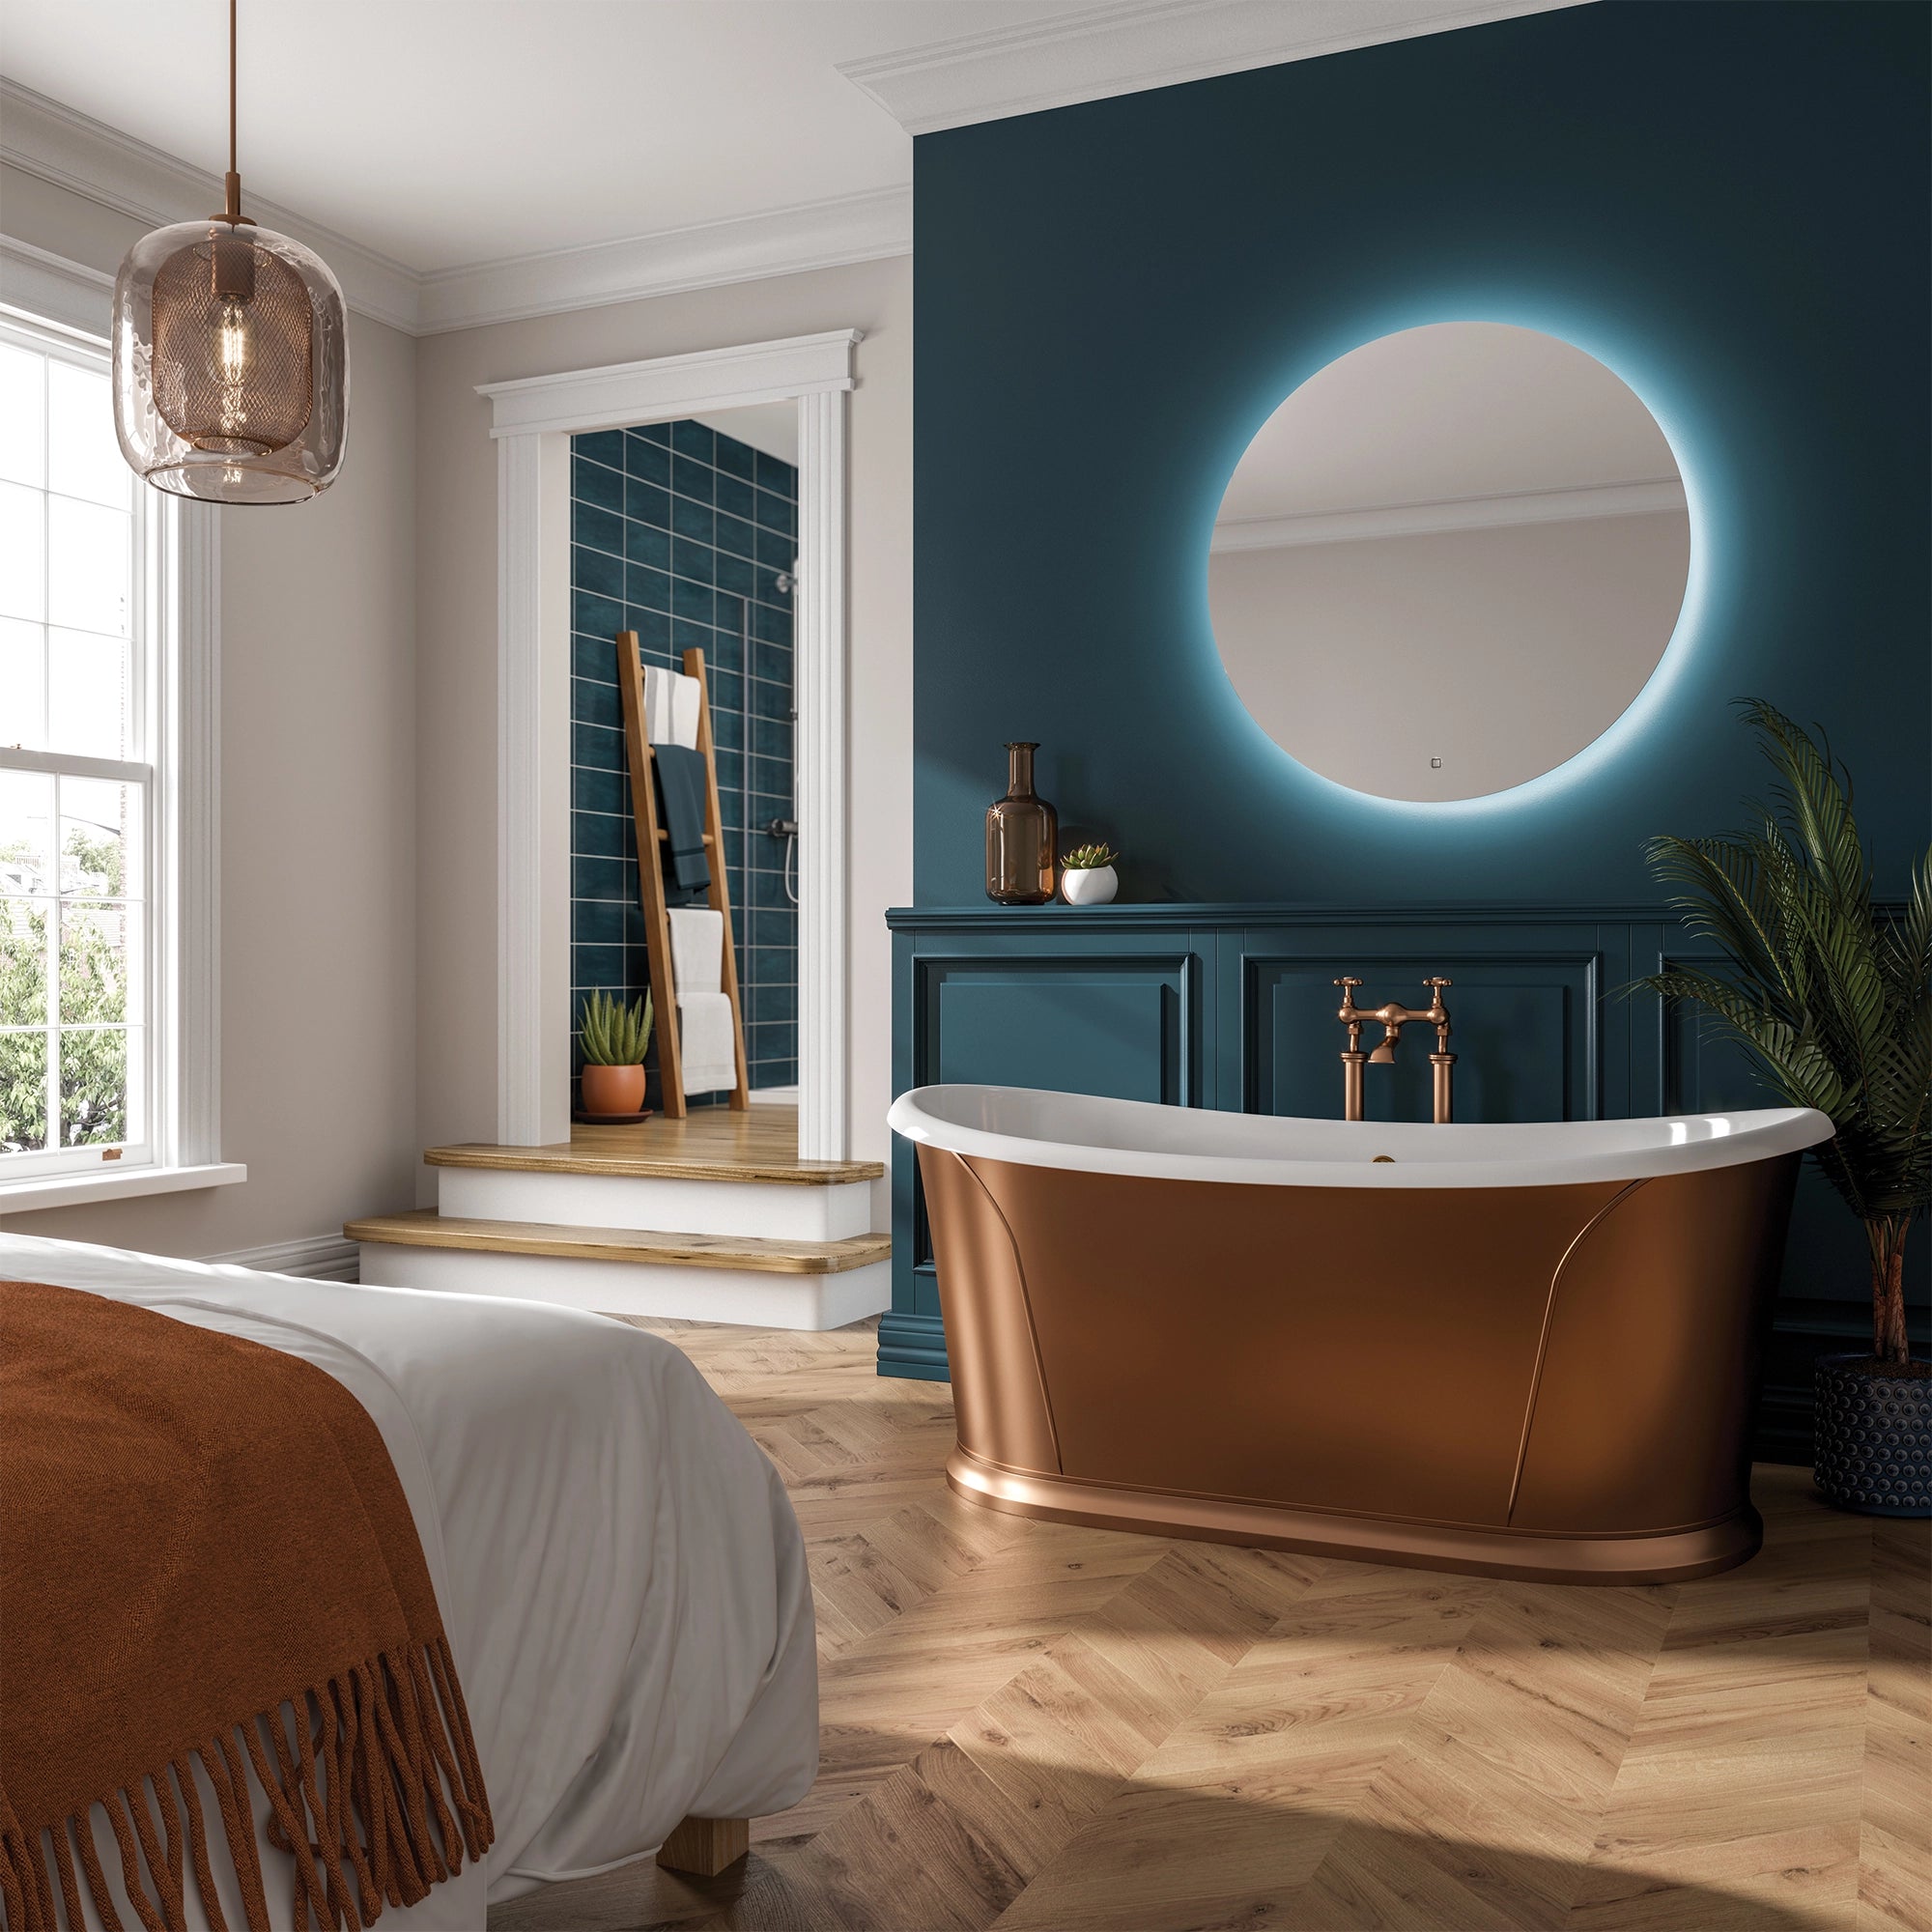 HiB Theme Adjustable Lighting Round Bathroom Mirror